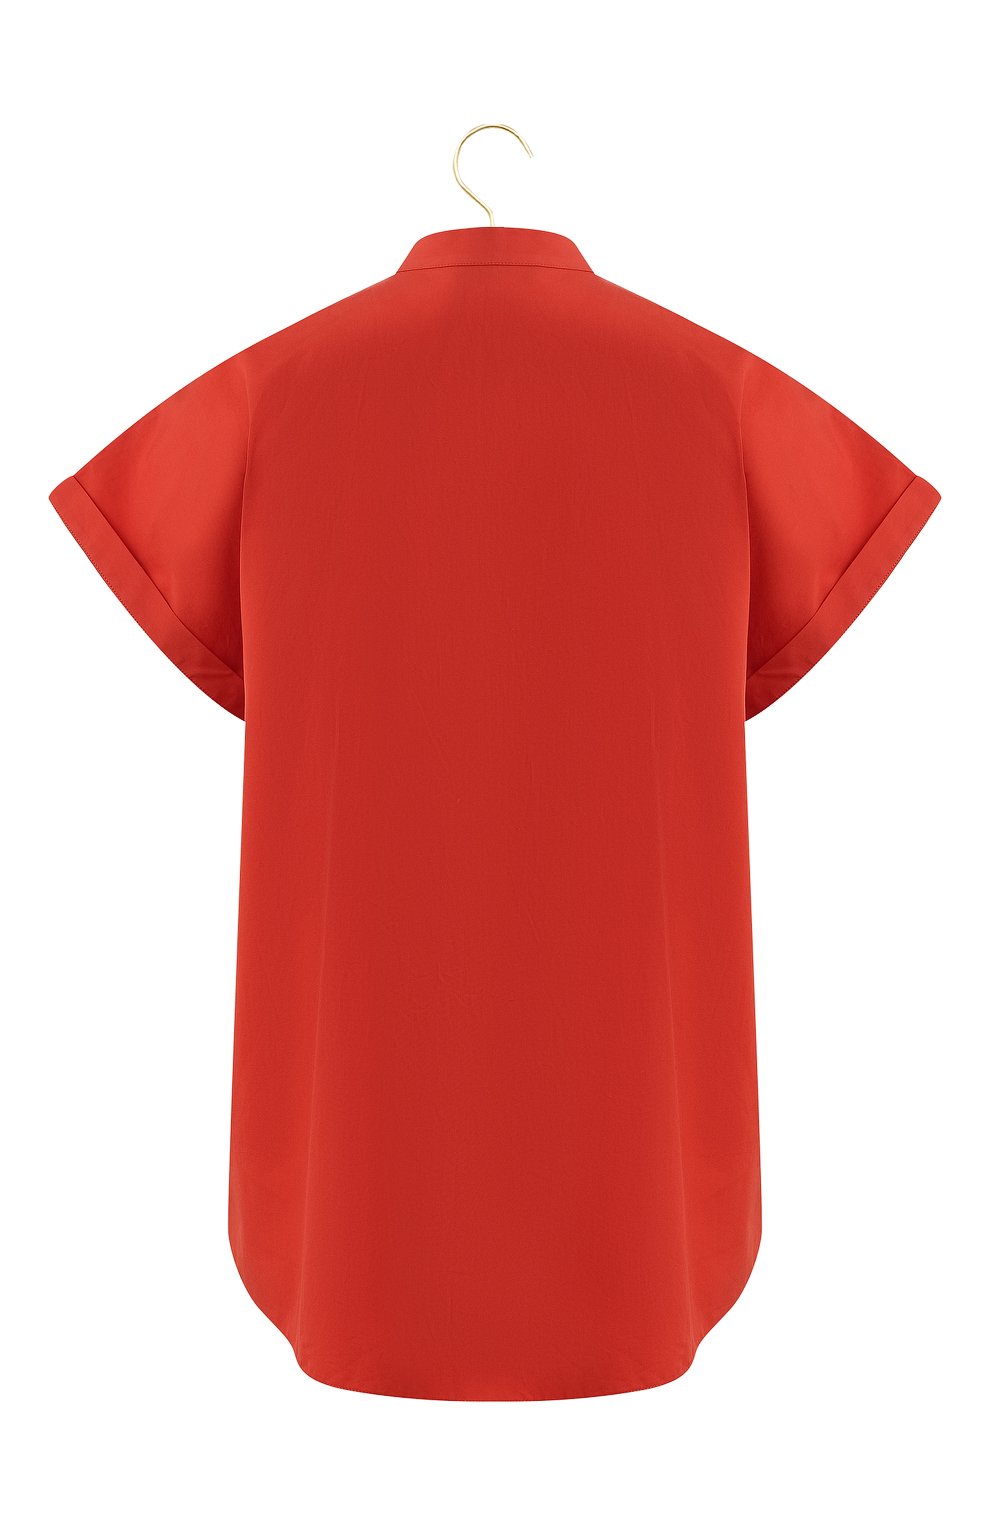 Хлопковая блузка | Loro Piana | Красный - 2